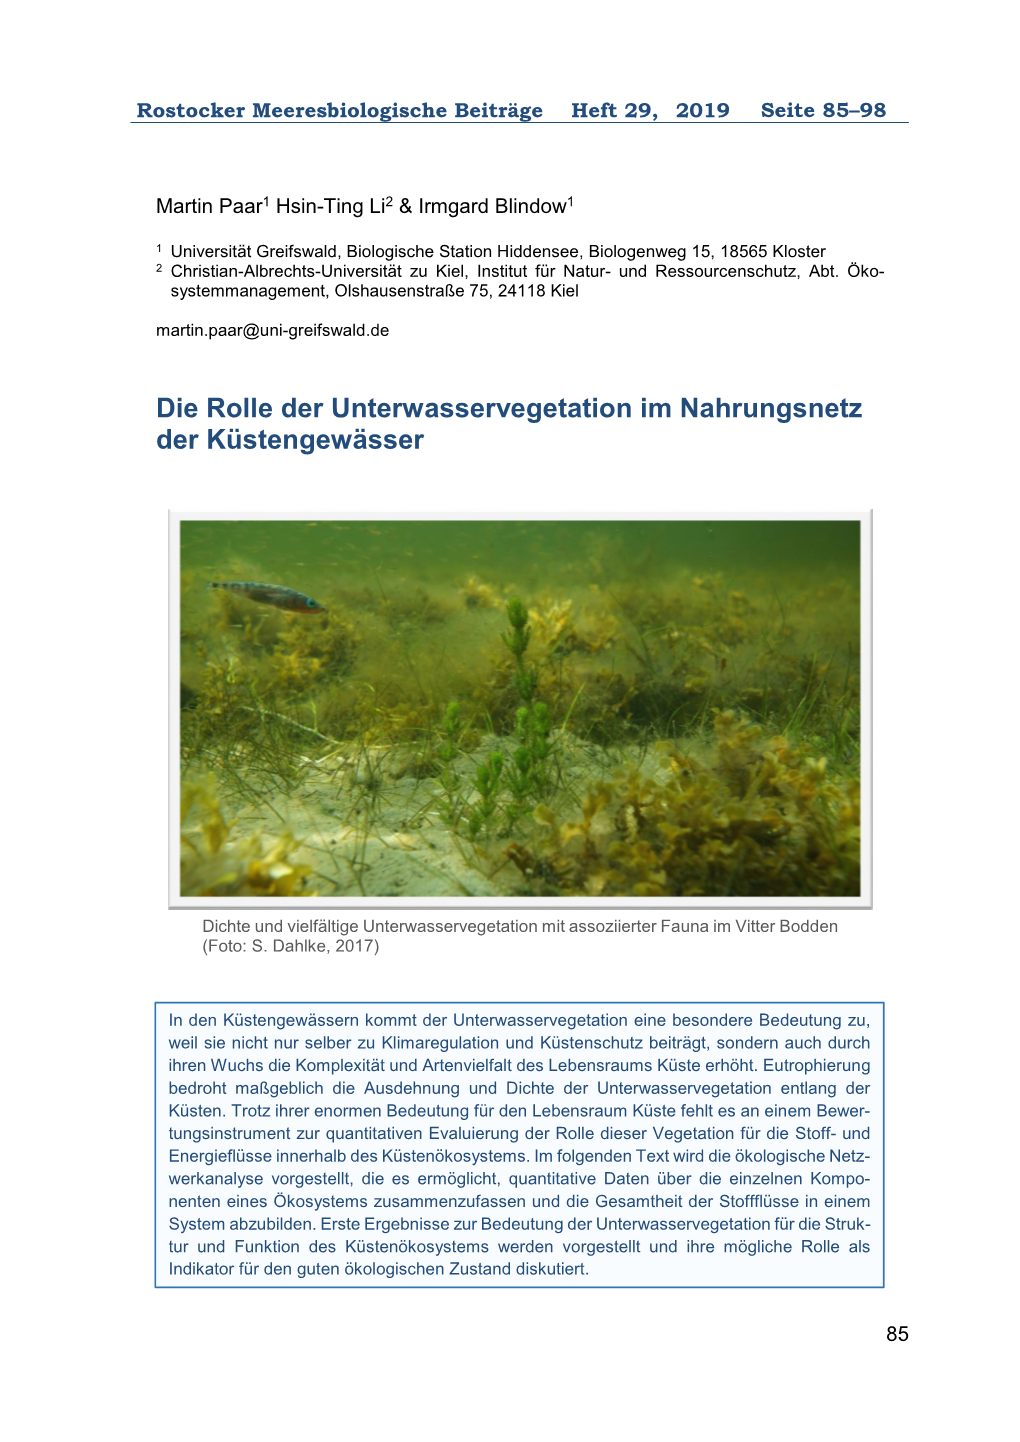 Die Rolle Der Unterwasservegetation Im Nahrungsnetz Der Küstengewässer